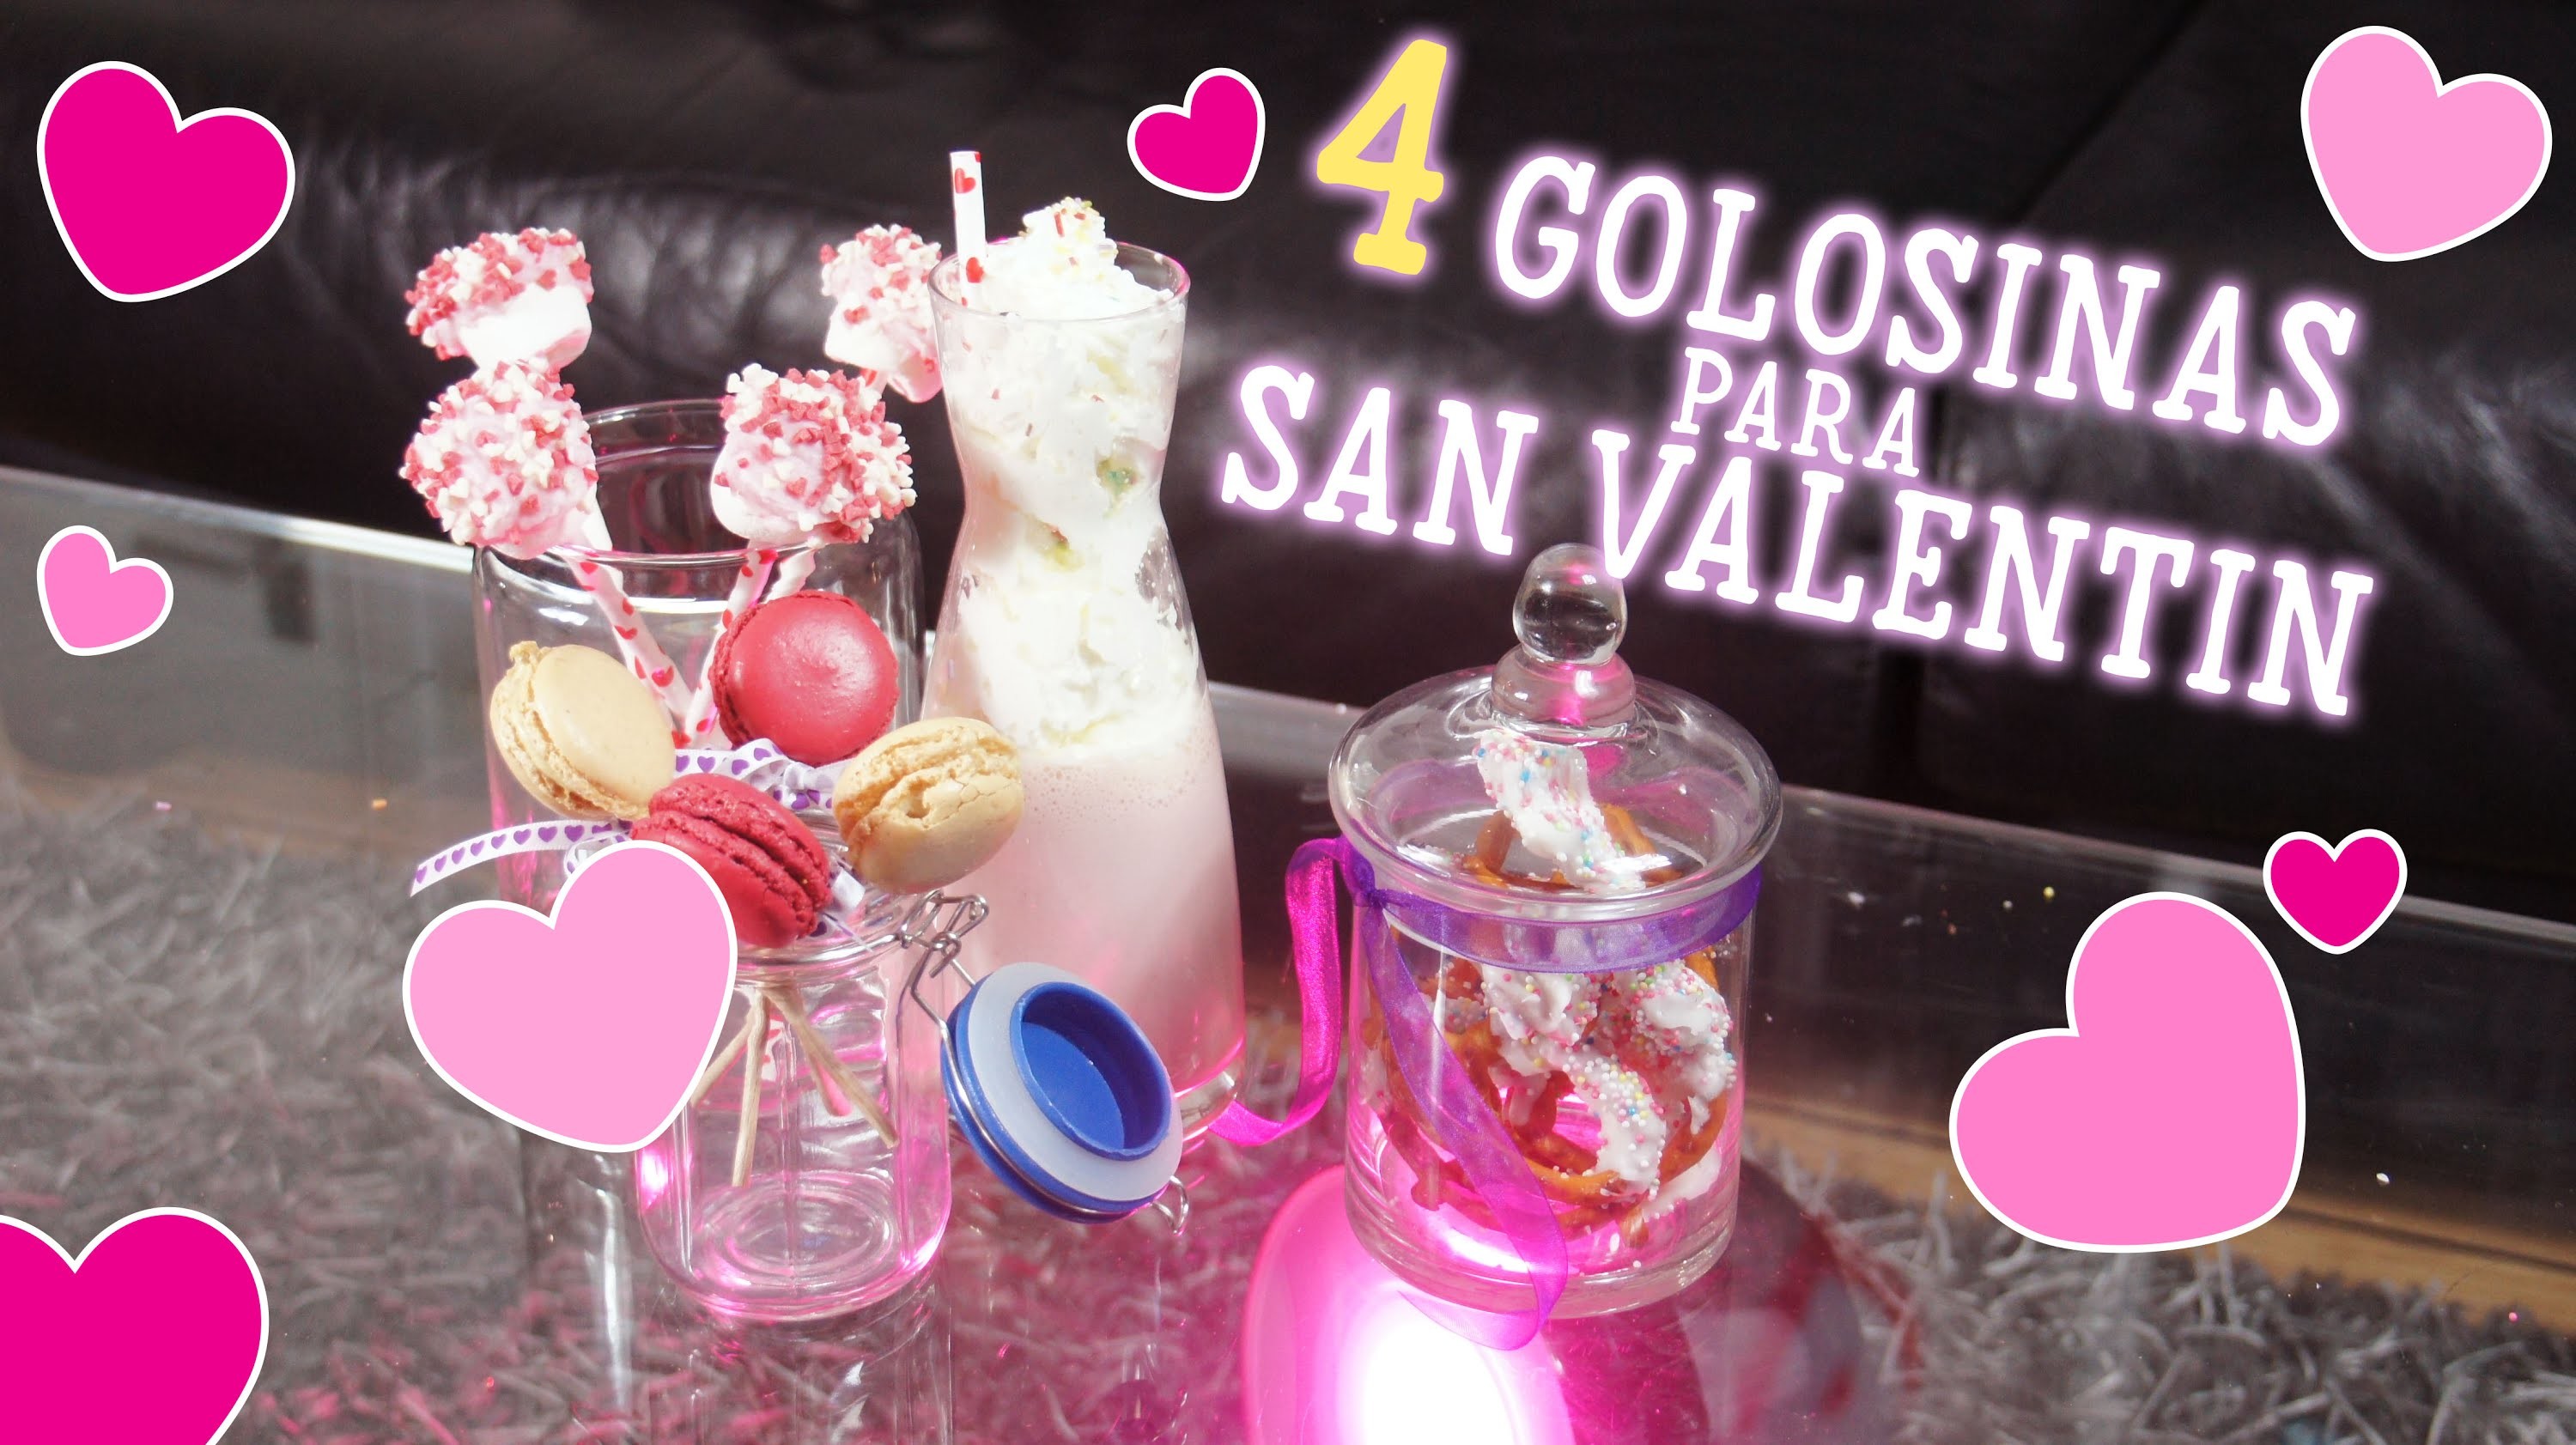 ♡ 4 Golosinas - Treats para San Valentin ♡